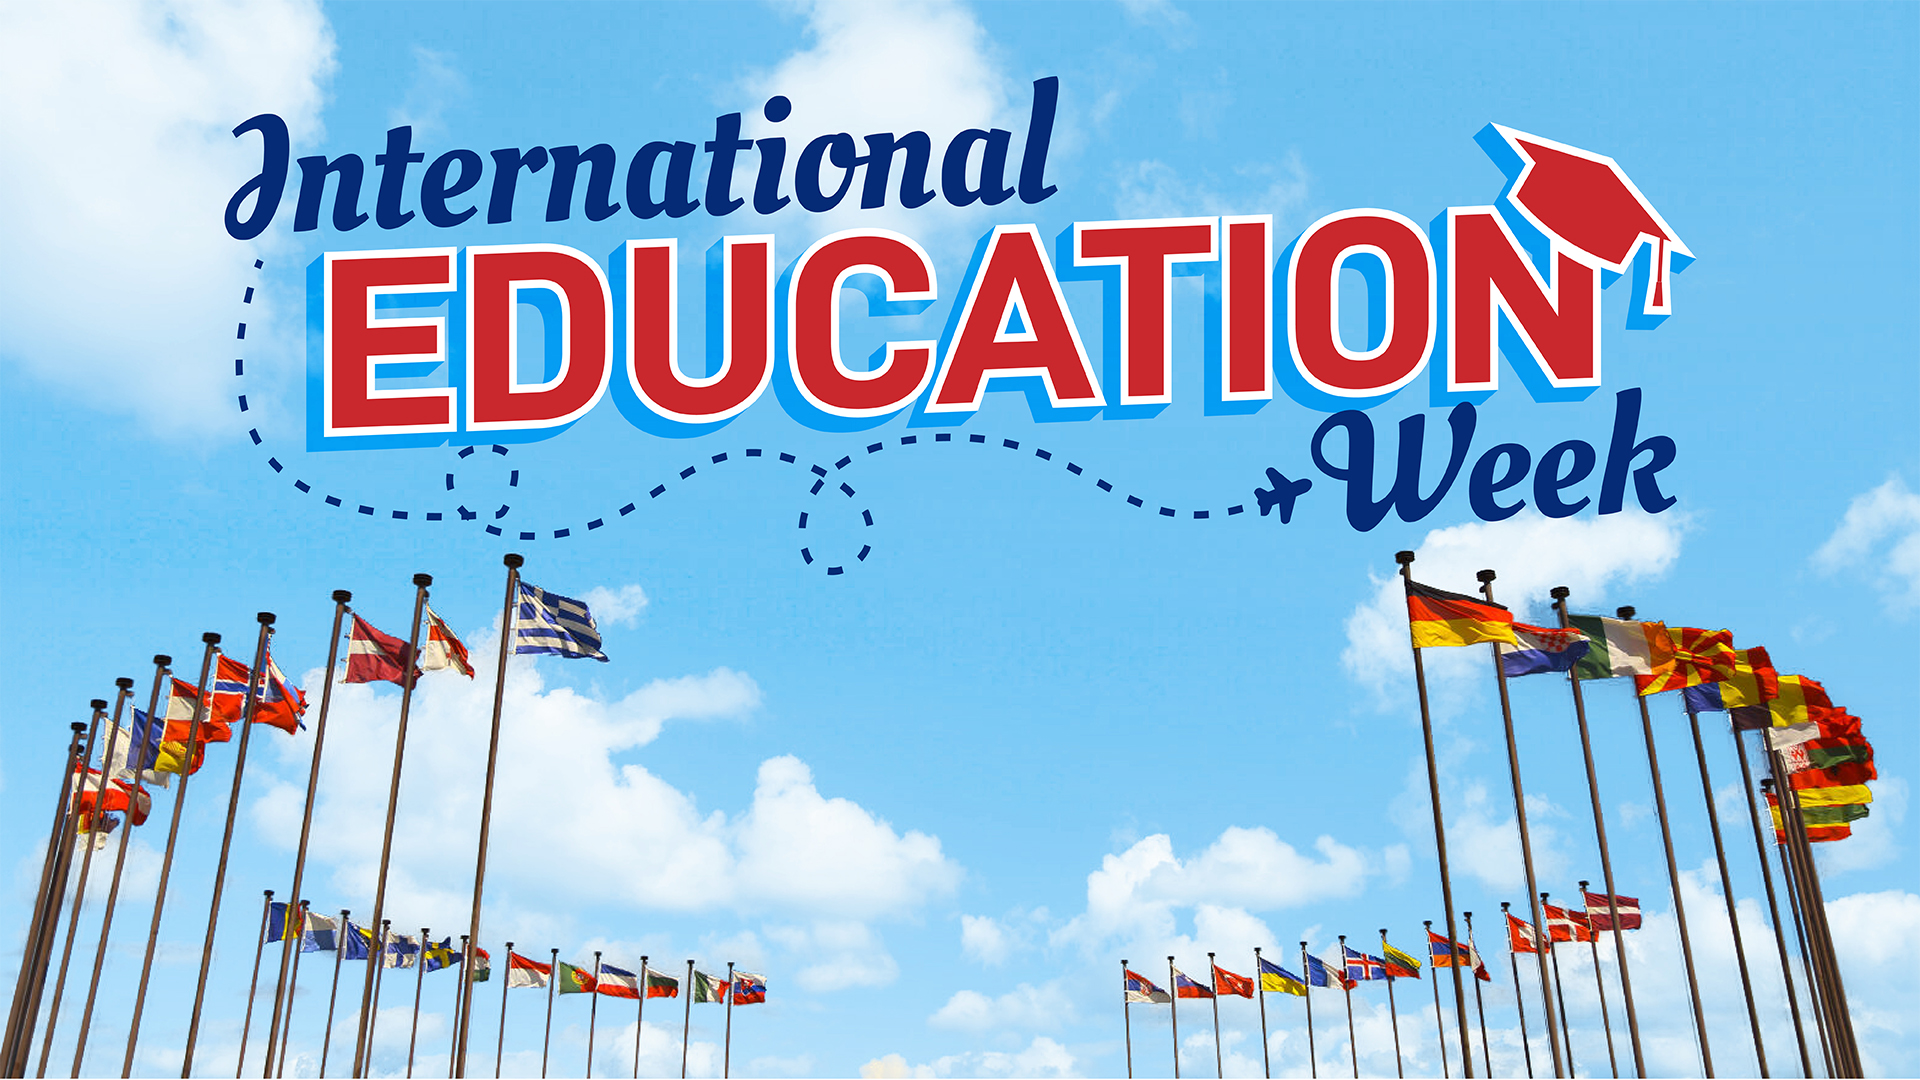 International-Education-Week 1920x1080.jpg